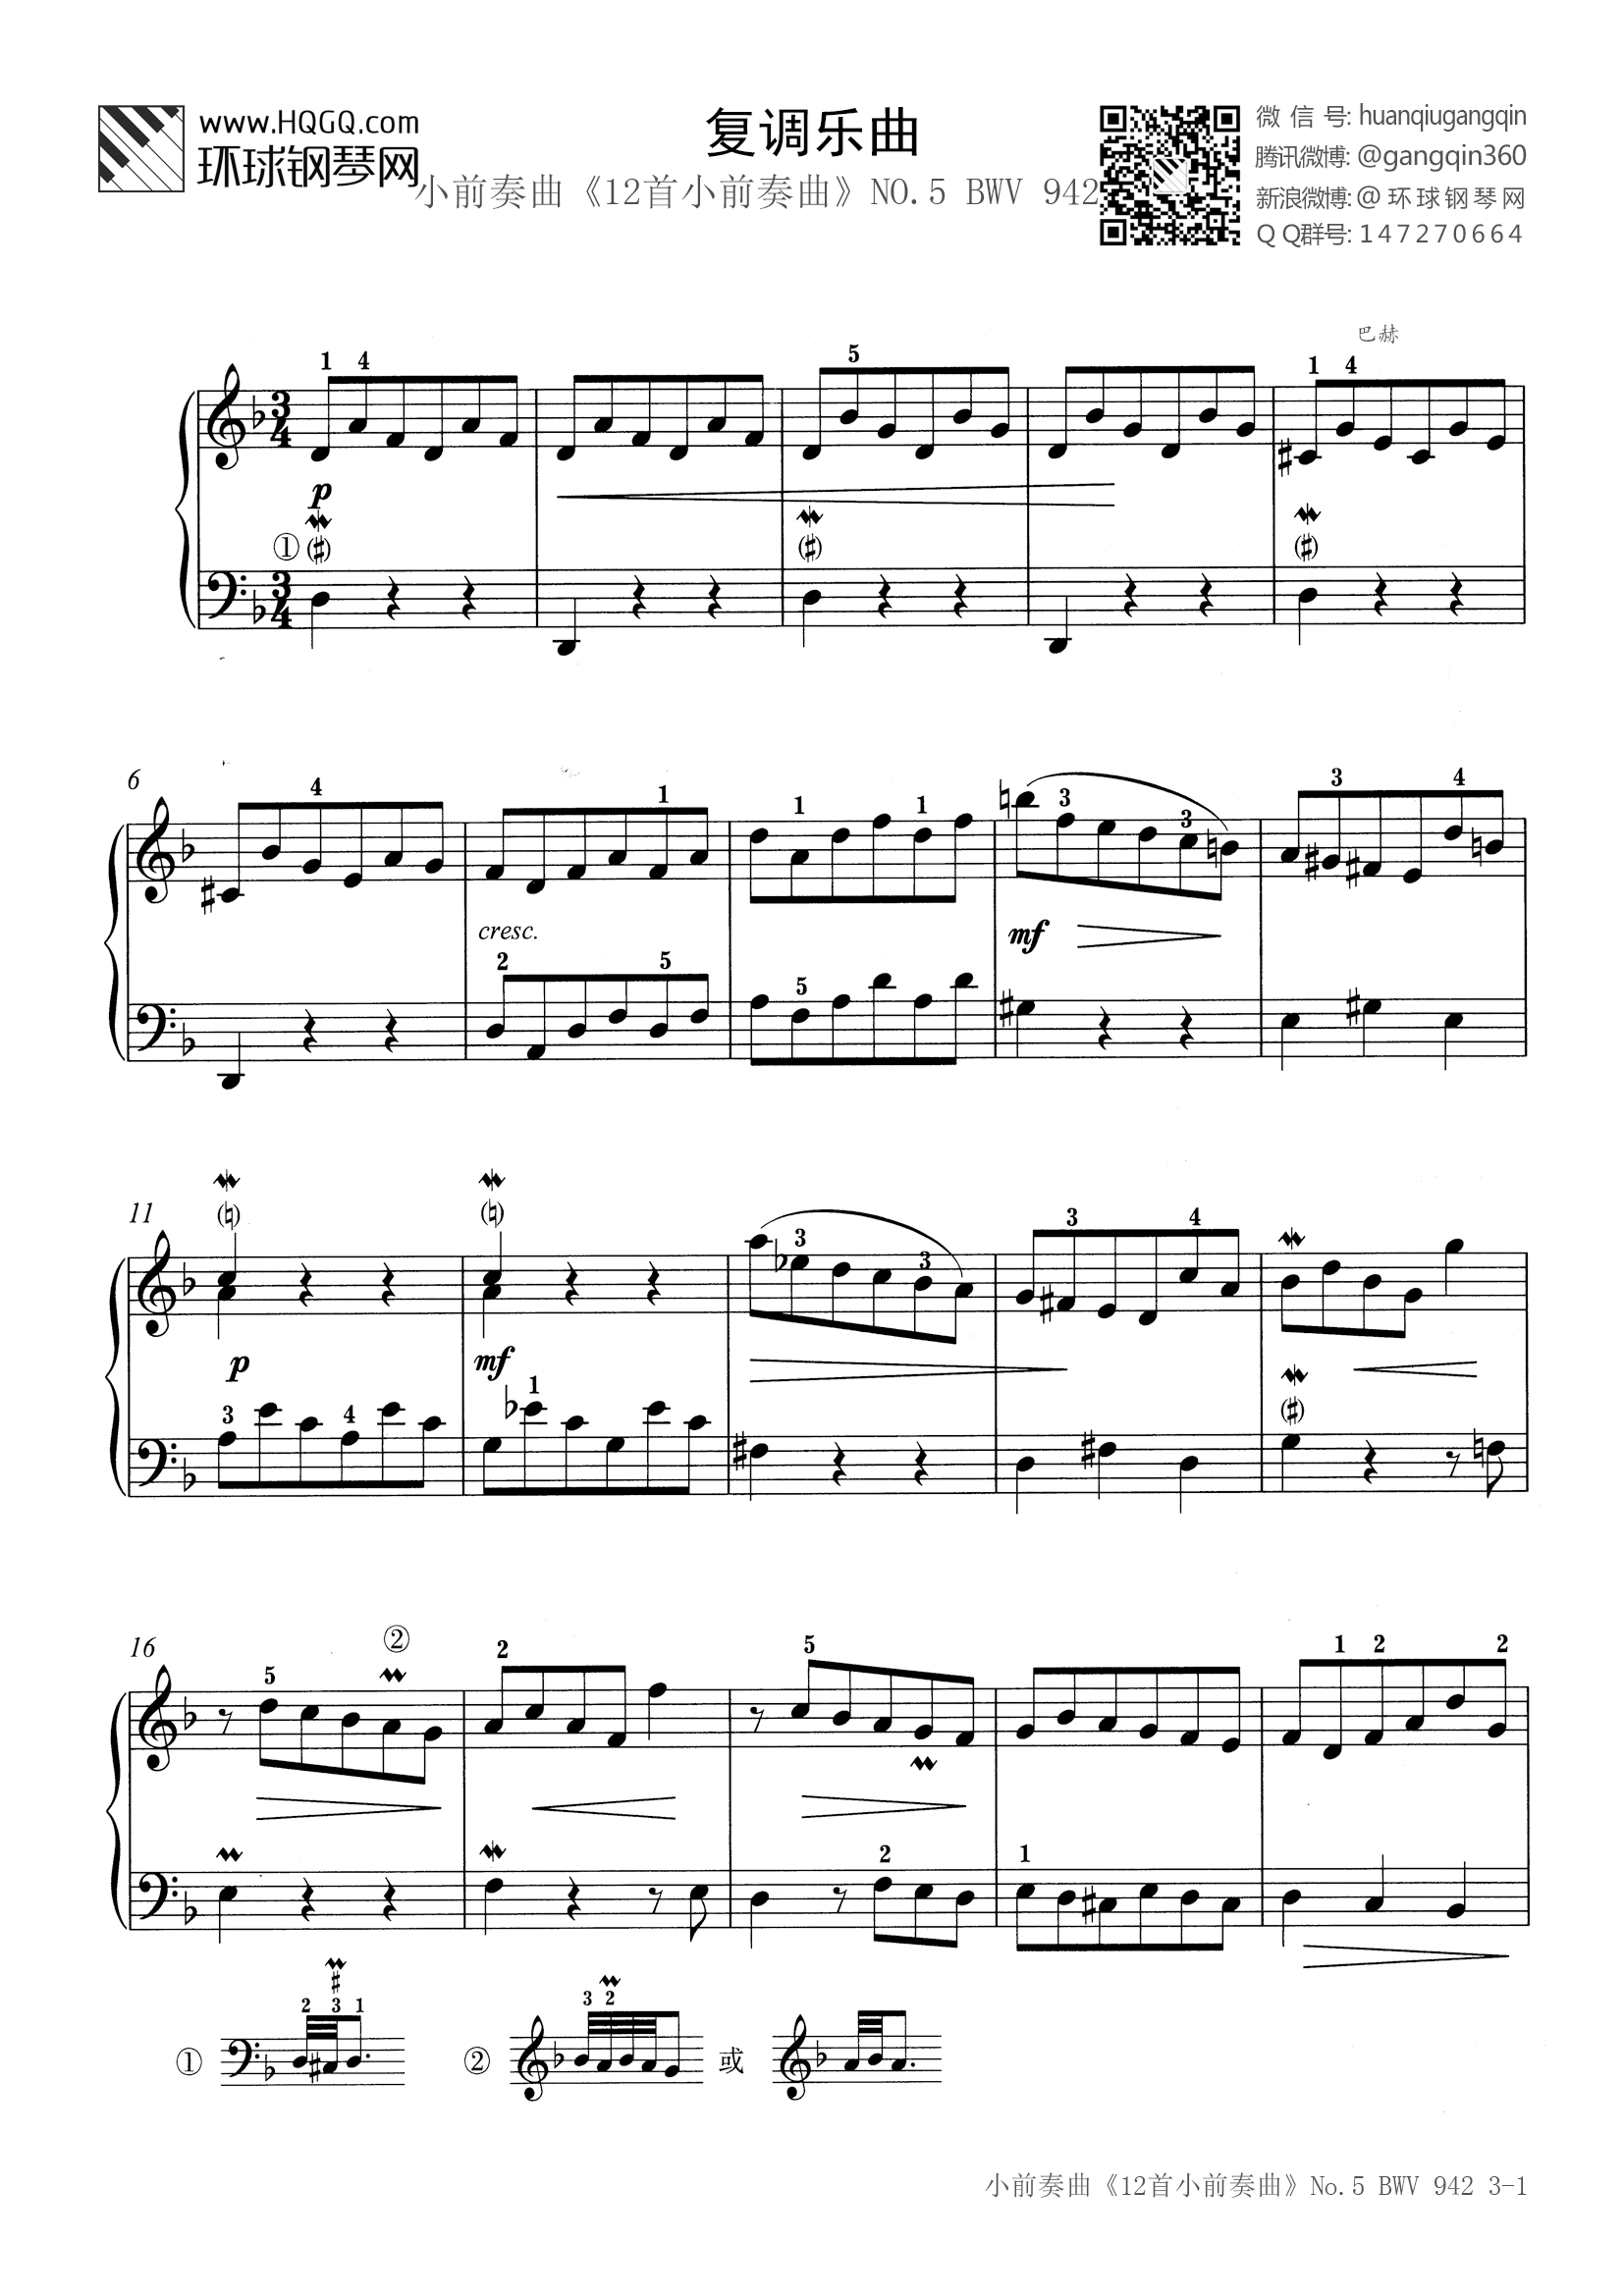 钢琴考级四级曲目(英皇钢琴考级四级曲目)